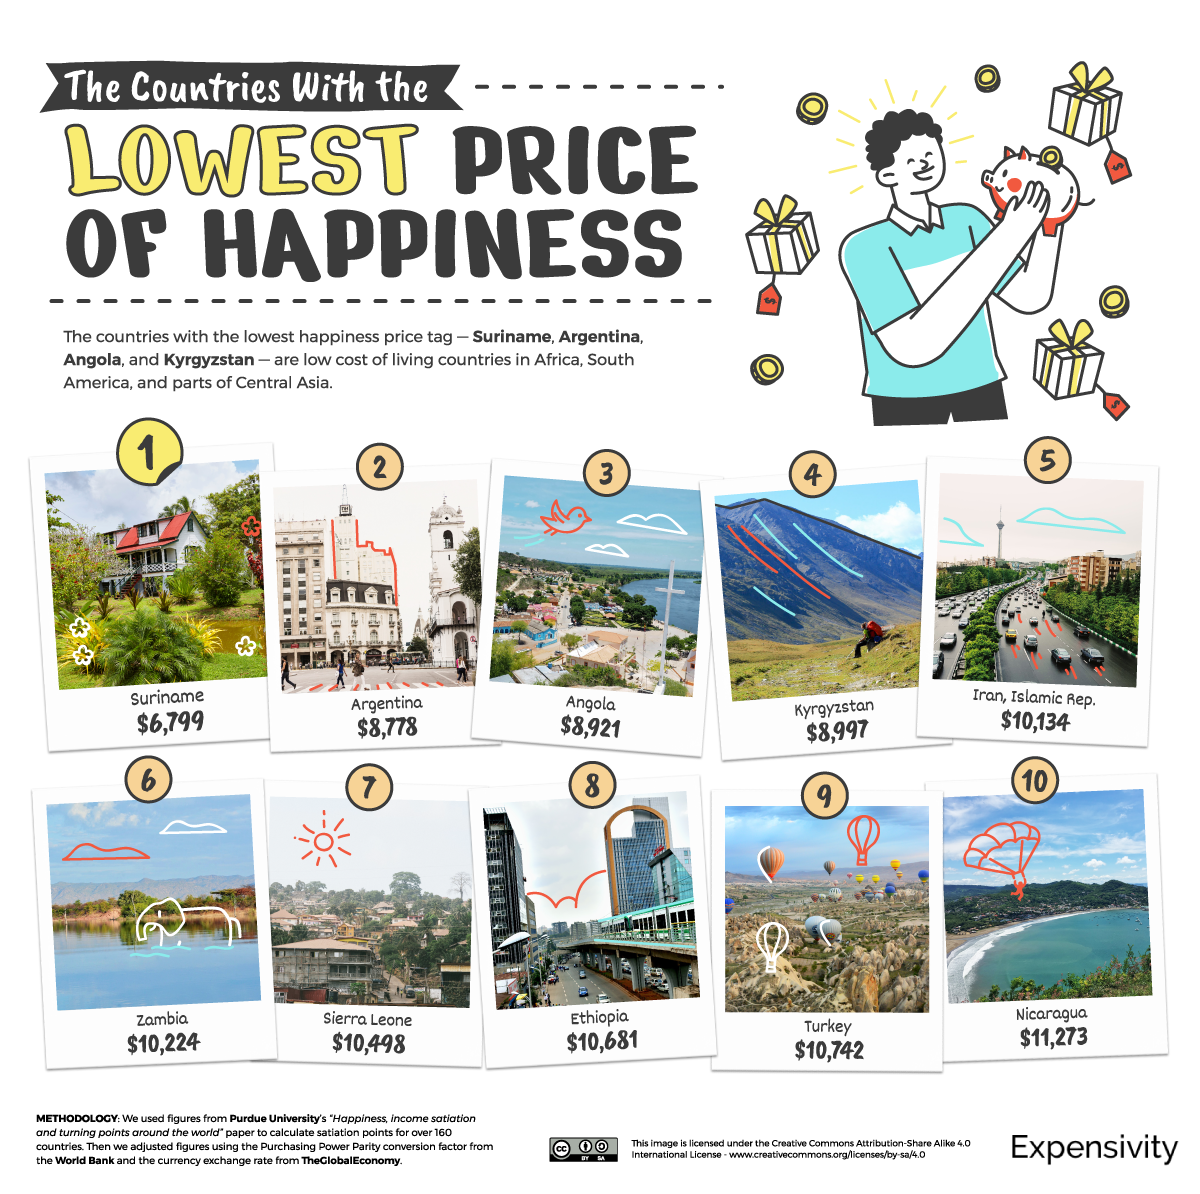 Скільки грошей потрібно для щастя на рік в Україні та інших країнах: опубліковано цифри